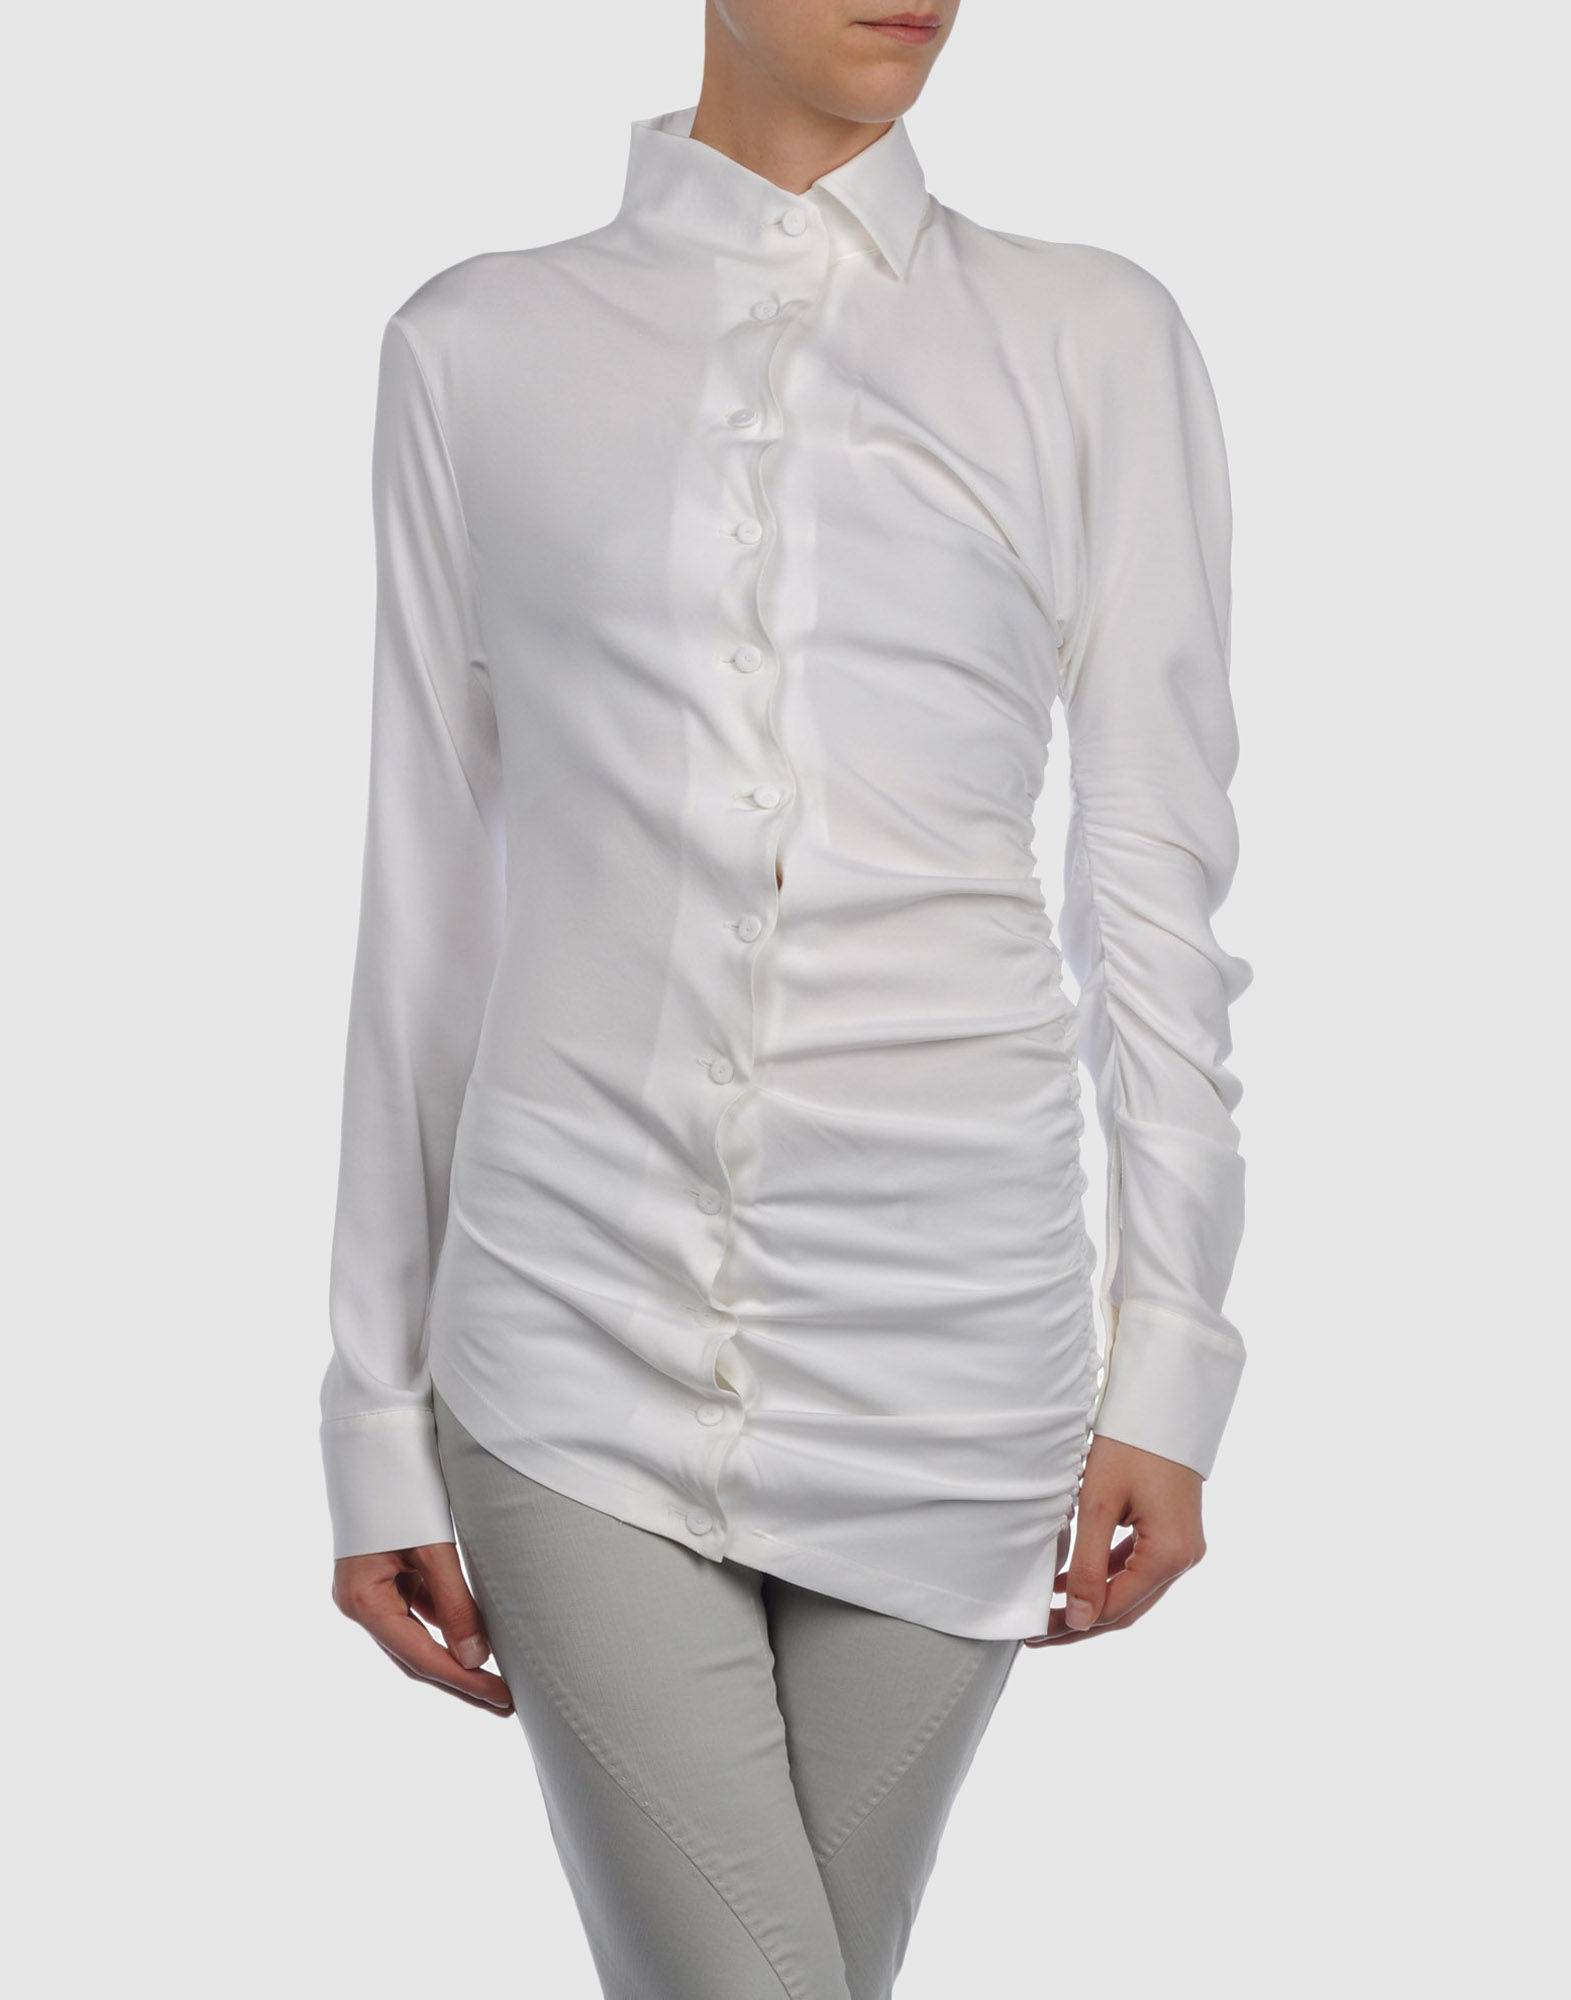 Jean Paul Gaultier Femme Long Sleeve Shirts in White | Lyst